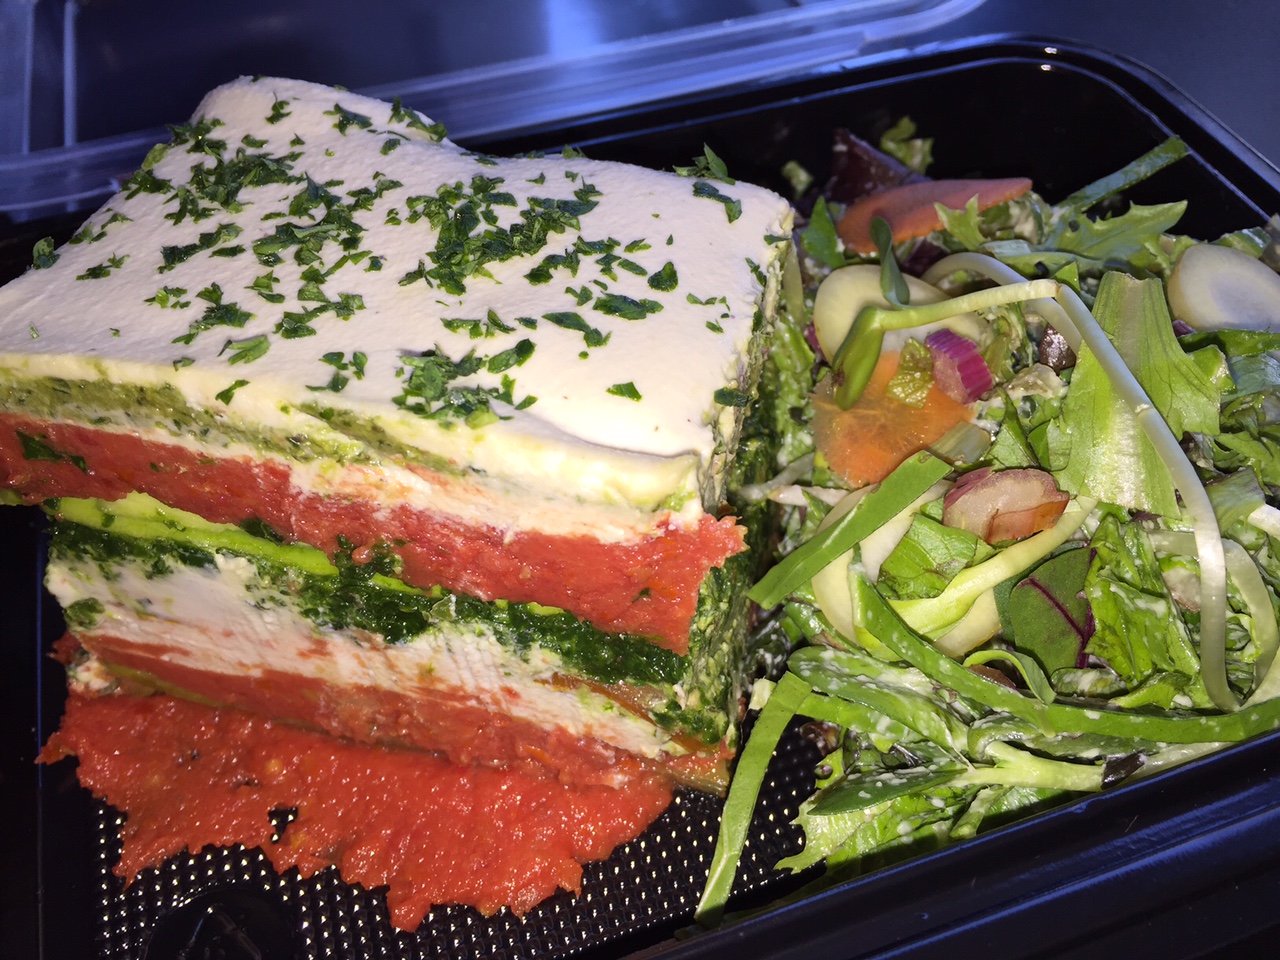  Living Lasagna,Local Green Salad